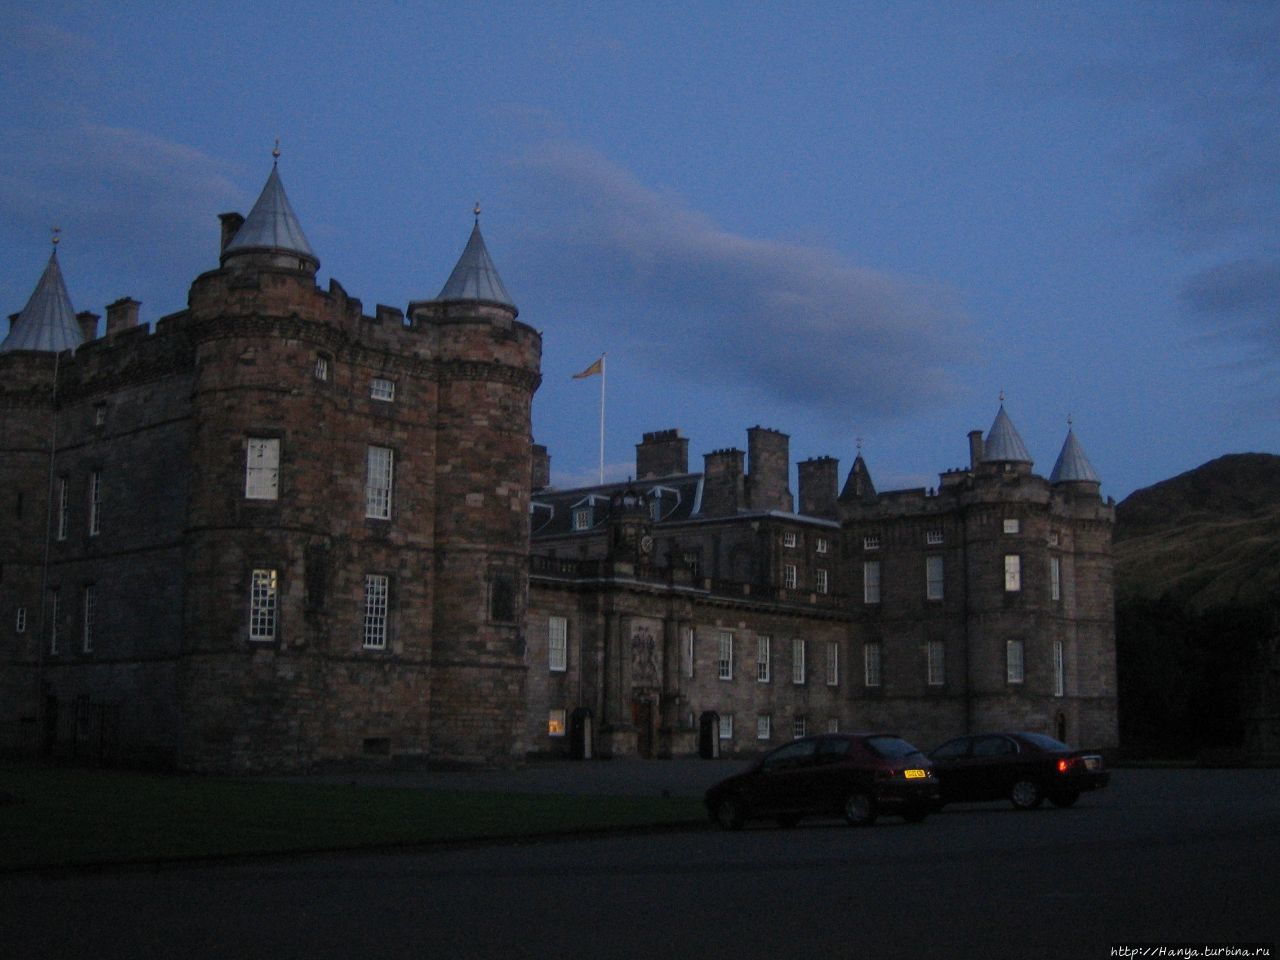 Королевский дворец Холирудхаус в Эдинбурге Эдинбург, Великобритания